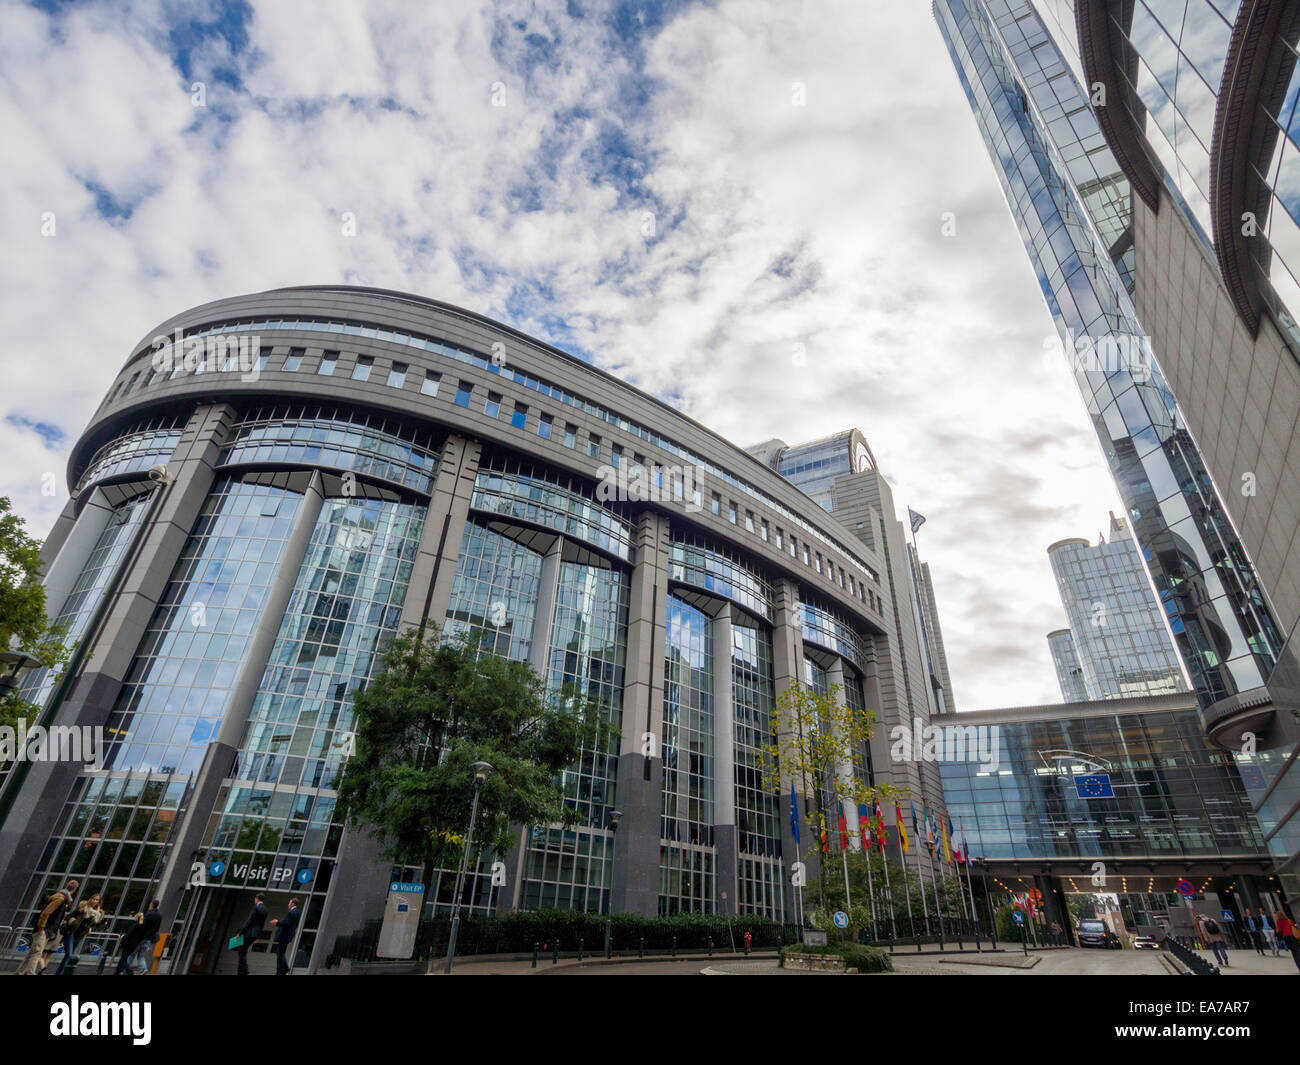 L'Union européenne Parlement européen à Bruxelles, Belgique, Europe Banque D'Images